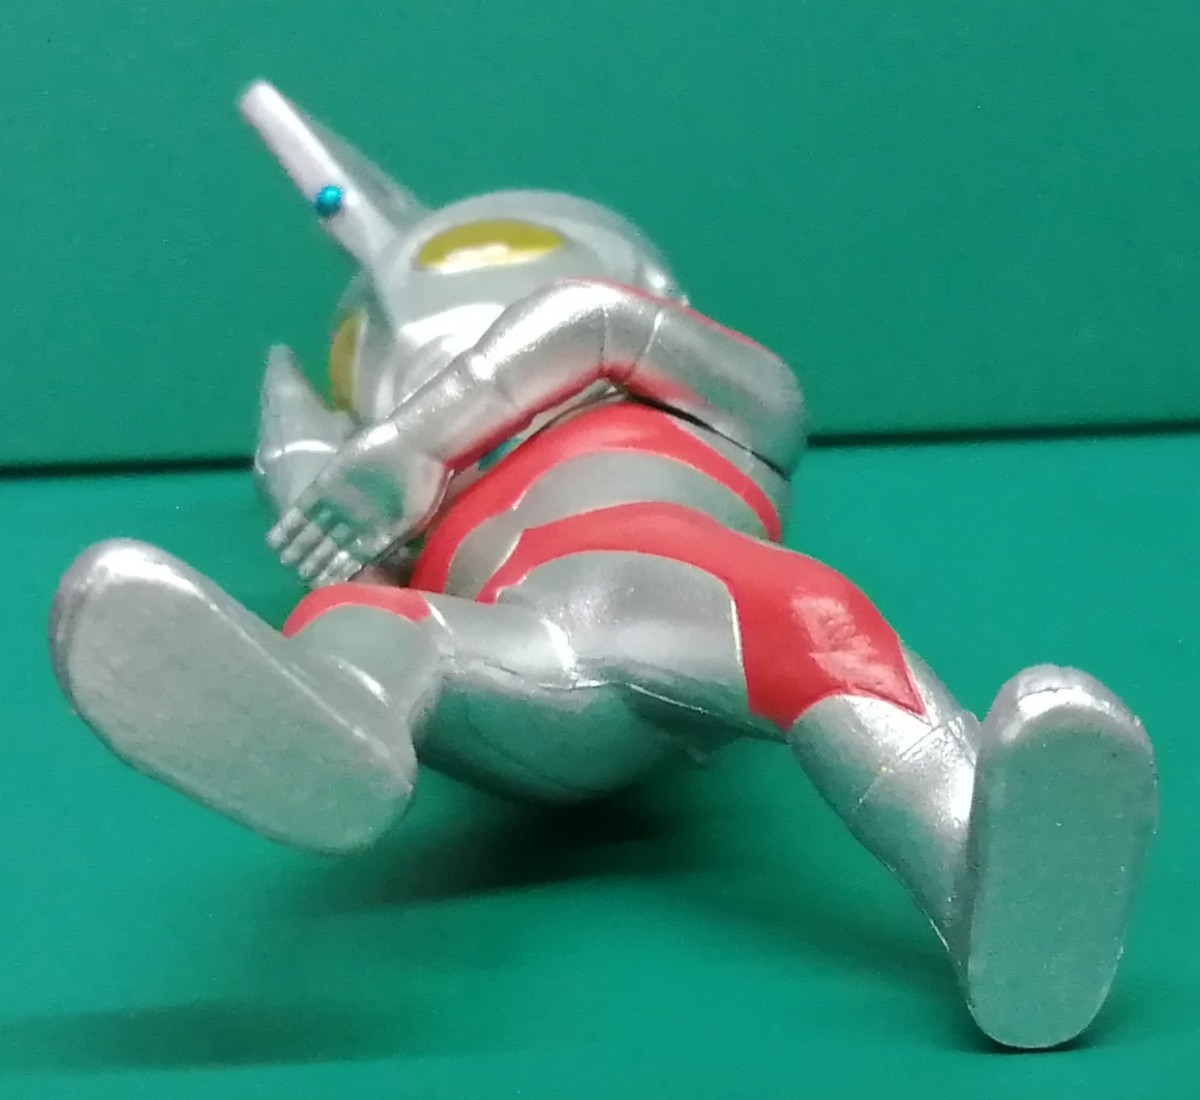  Ultraman Ace CONVERGE MOTION Ultraman Ace темно синий балка ji motion фигурка 